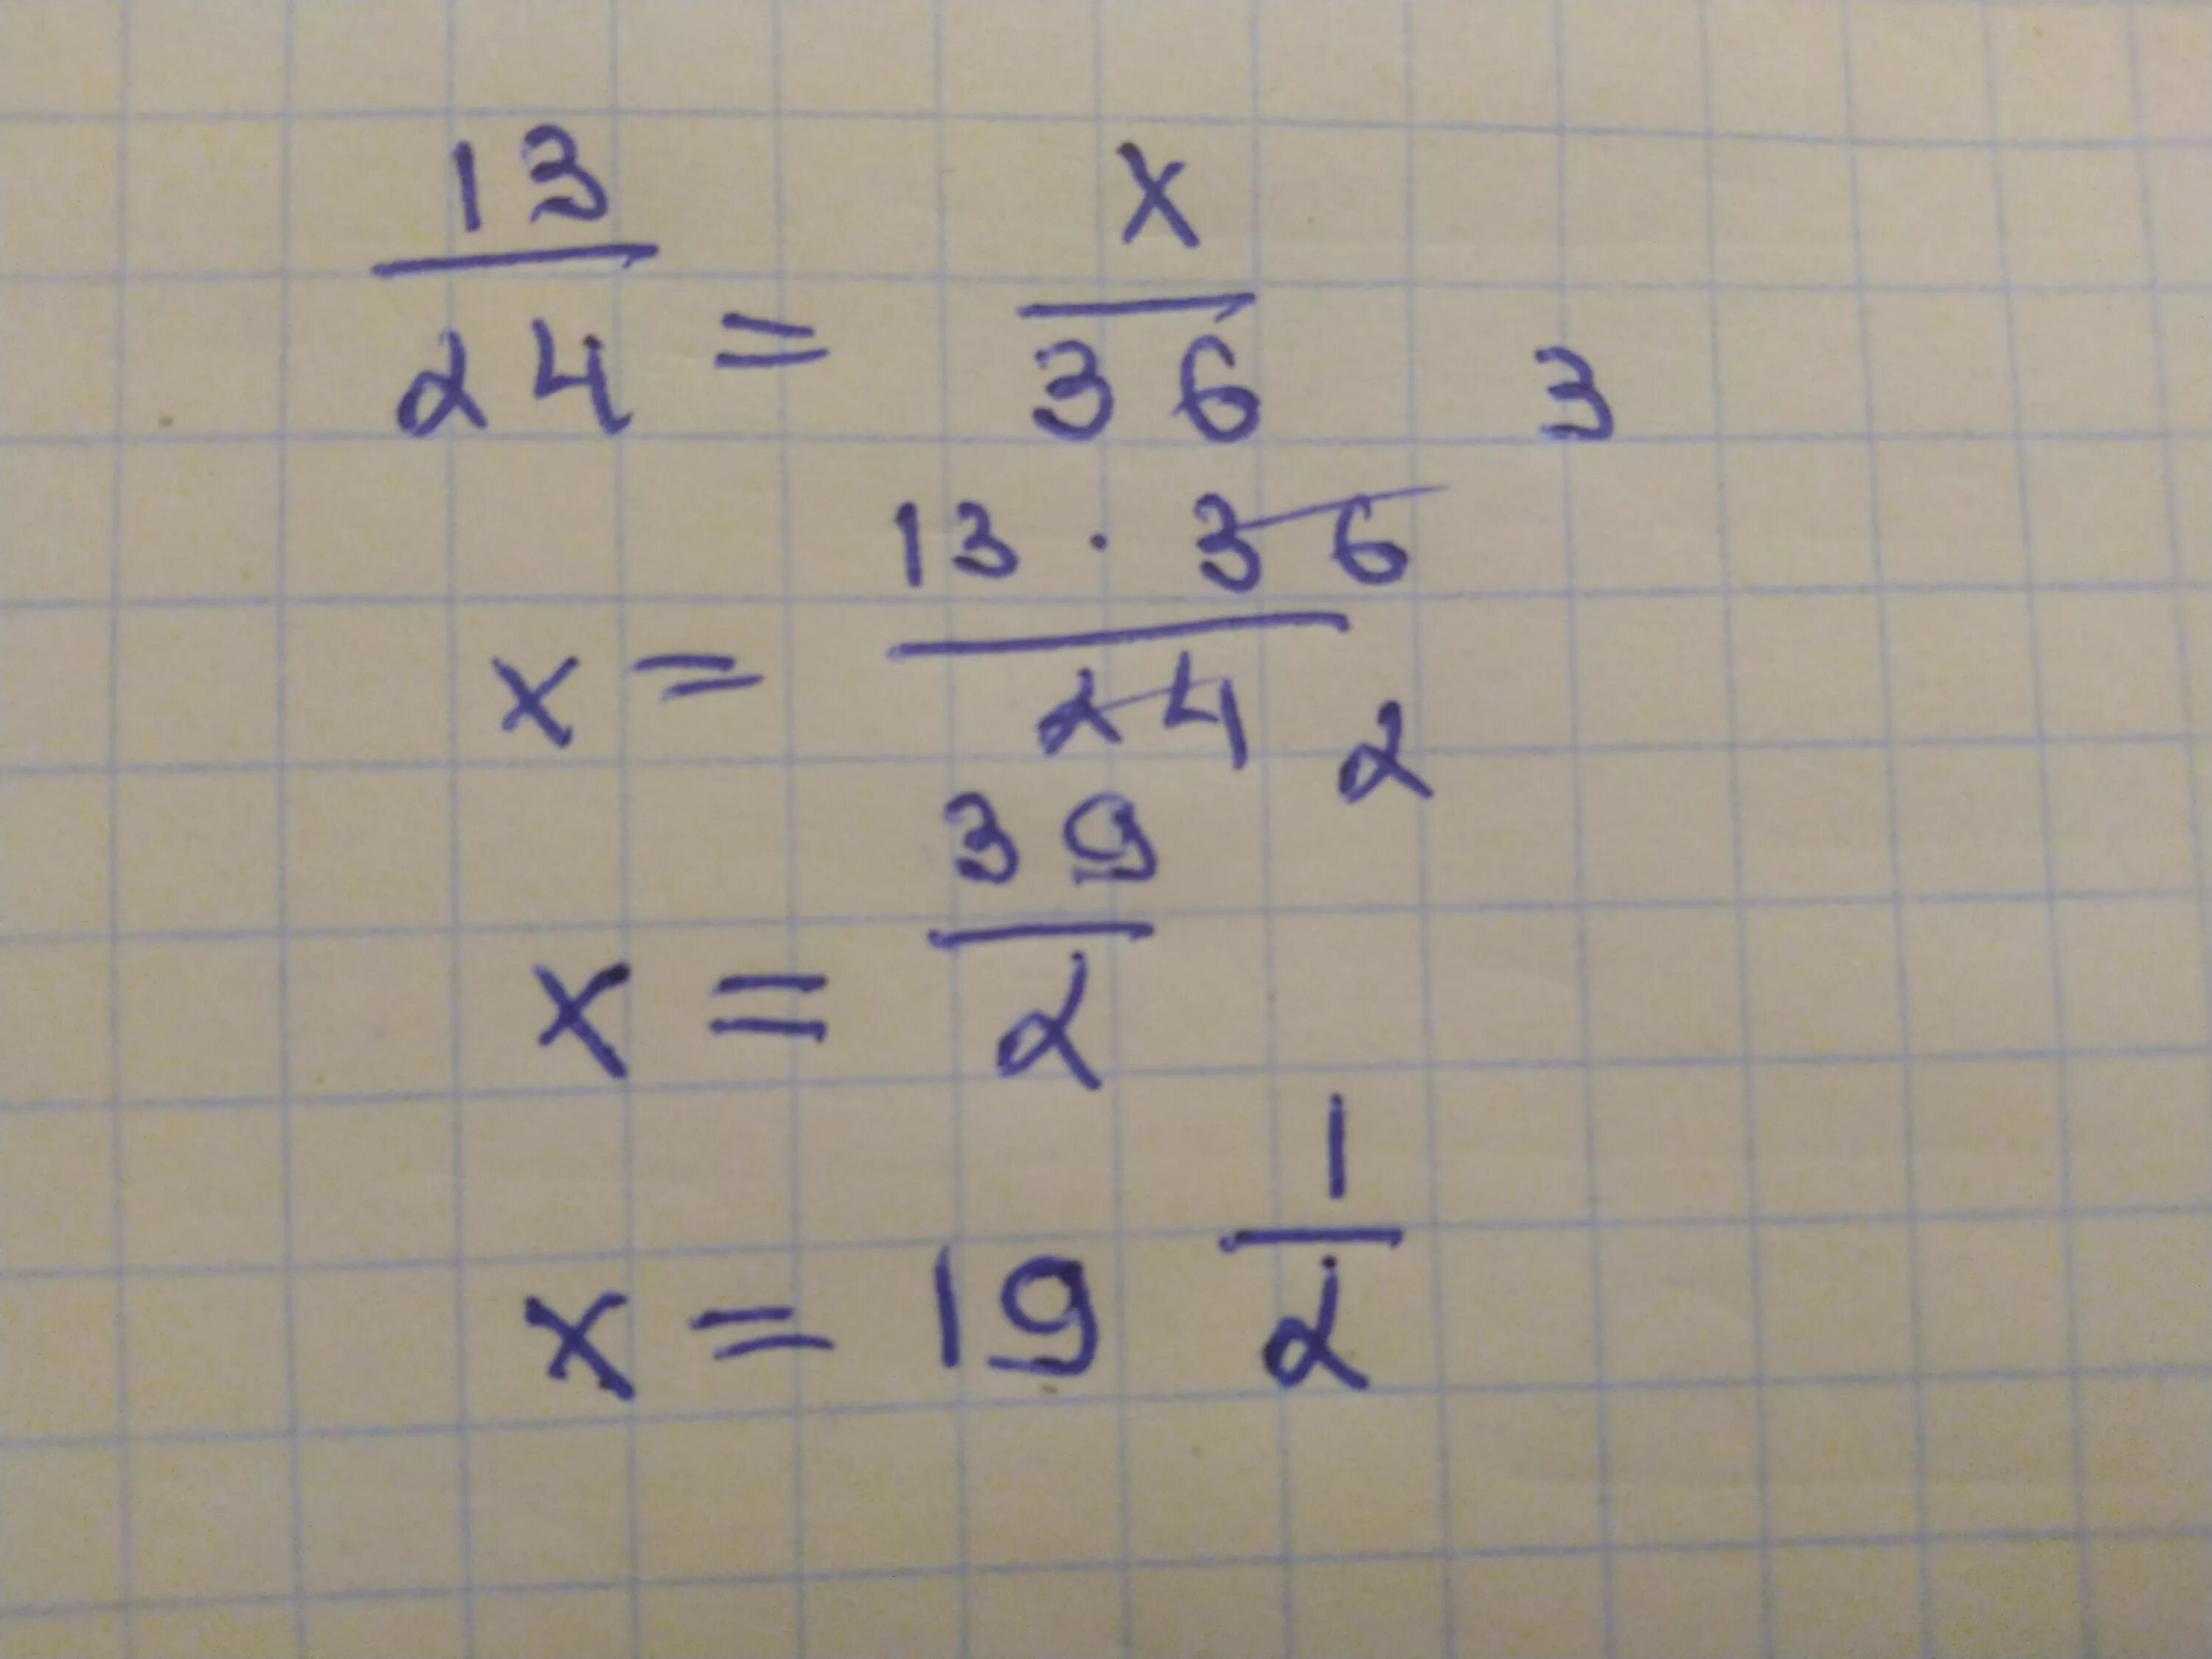 11 делить на 20. 13 2 Разделить на 24. 24 Разделить на 13. 13/24=X/36. 11 Поделённое на 13.